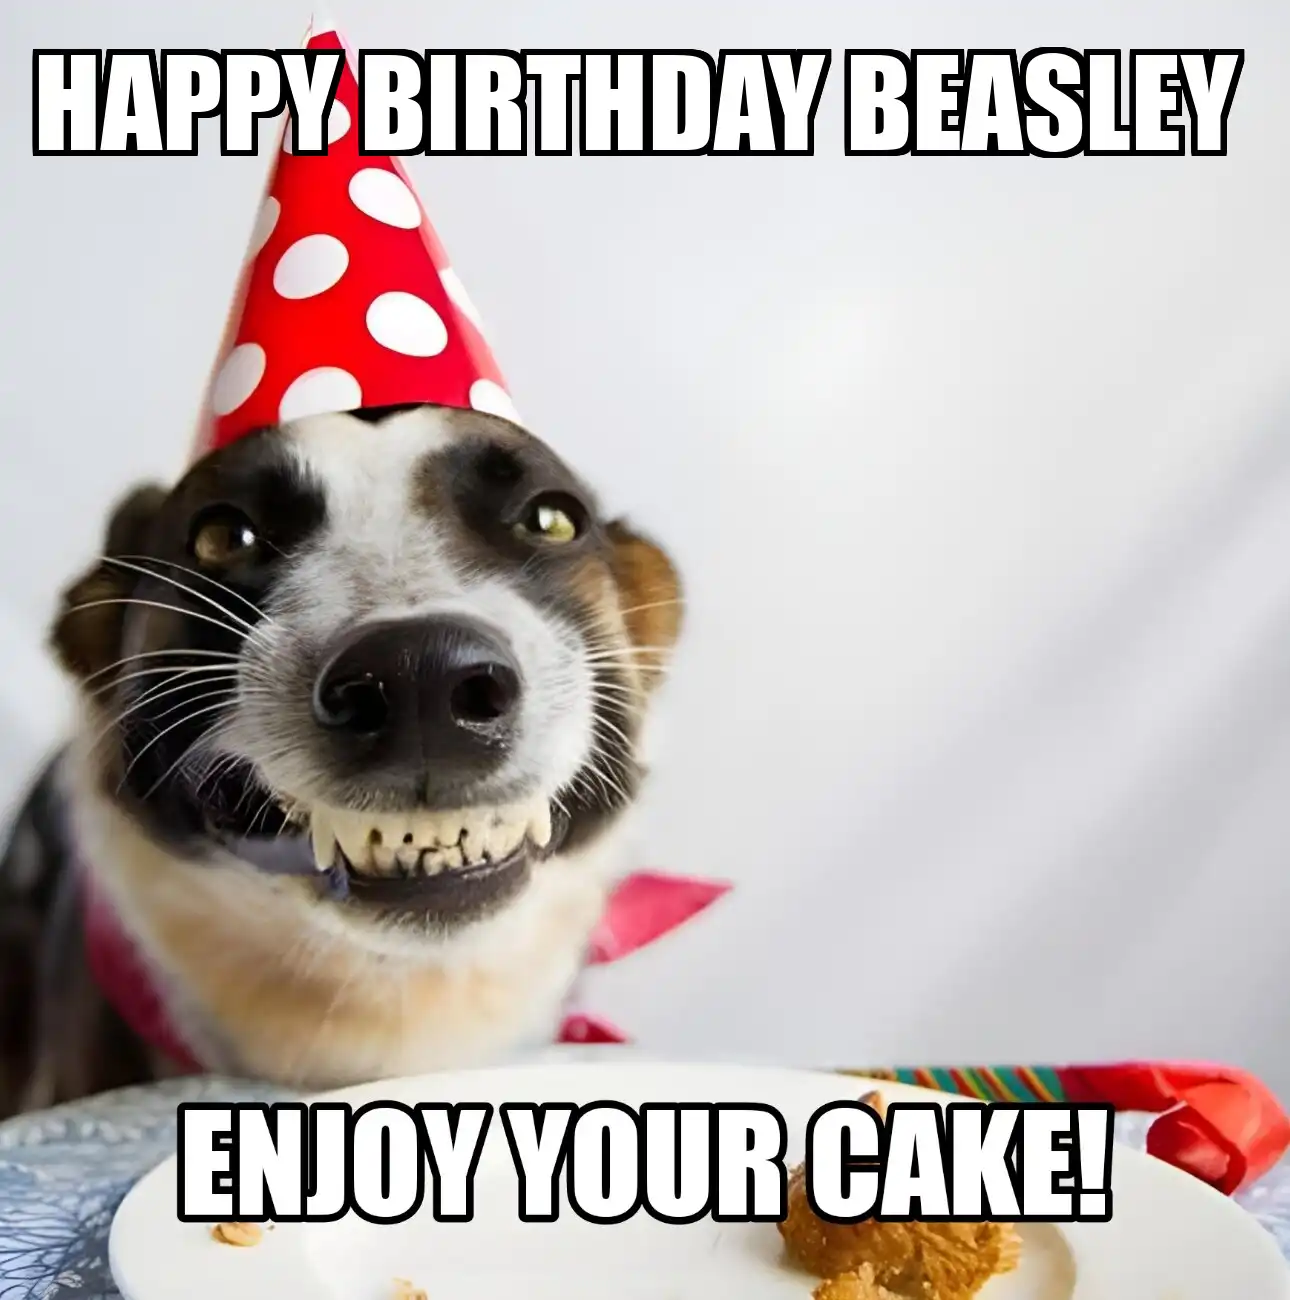 Happy Birthday Beasley Enjoy Your Cake Dog Meme